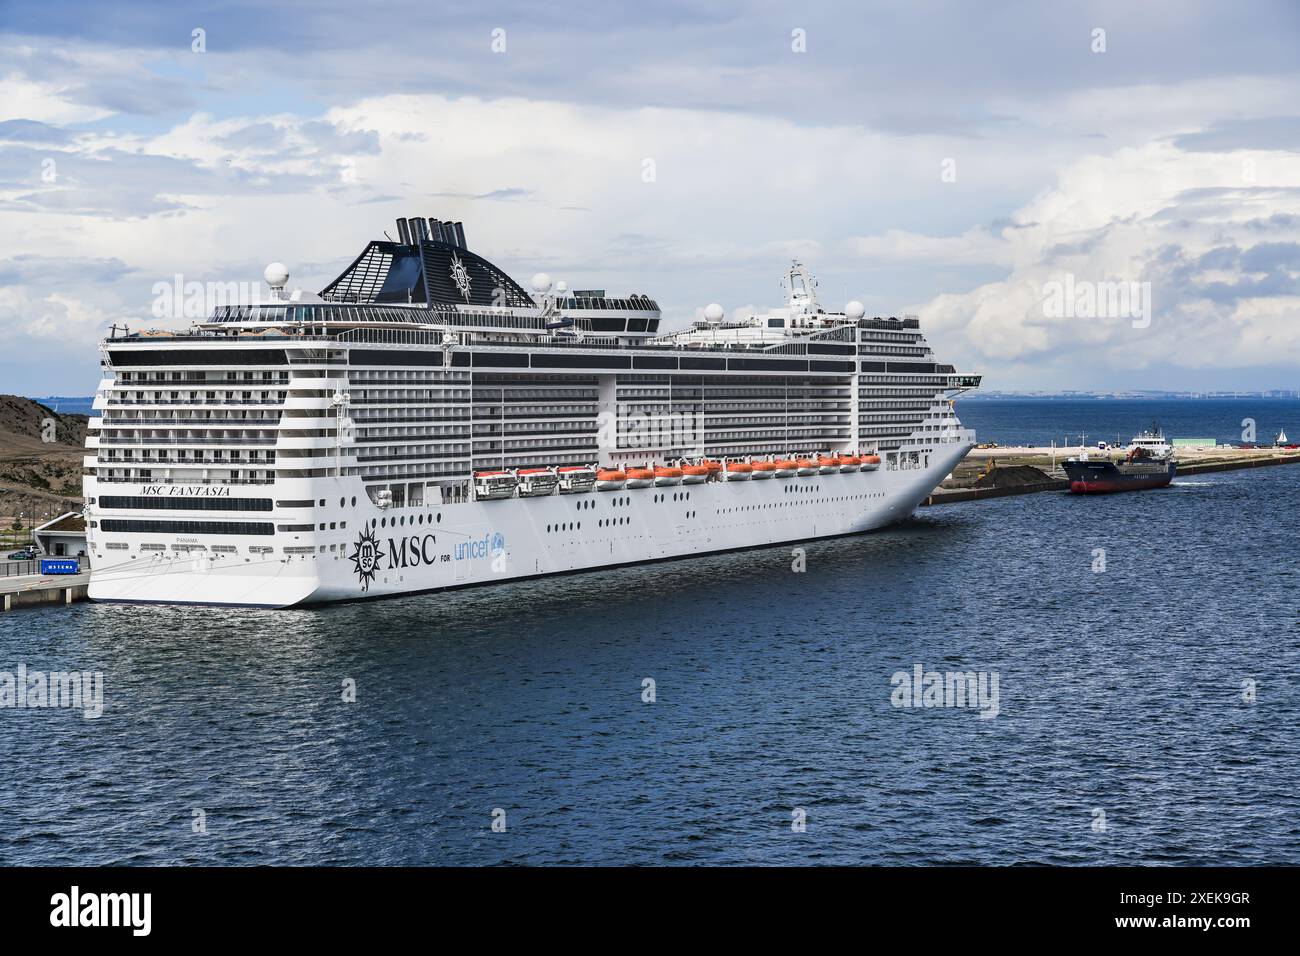 Navire de croisière MSC Fantasia amarré au terminal Oceankaj Cruise à Copenhague Danemark. Le navire fait partie d'un partenariat avec l'UNICEF et MSC Cruises Banque D'Images